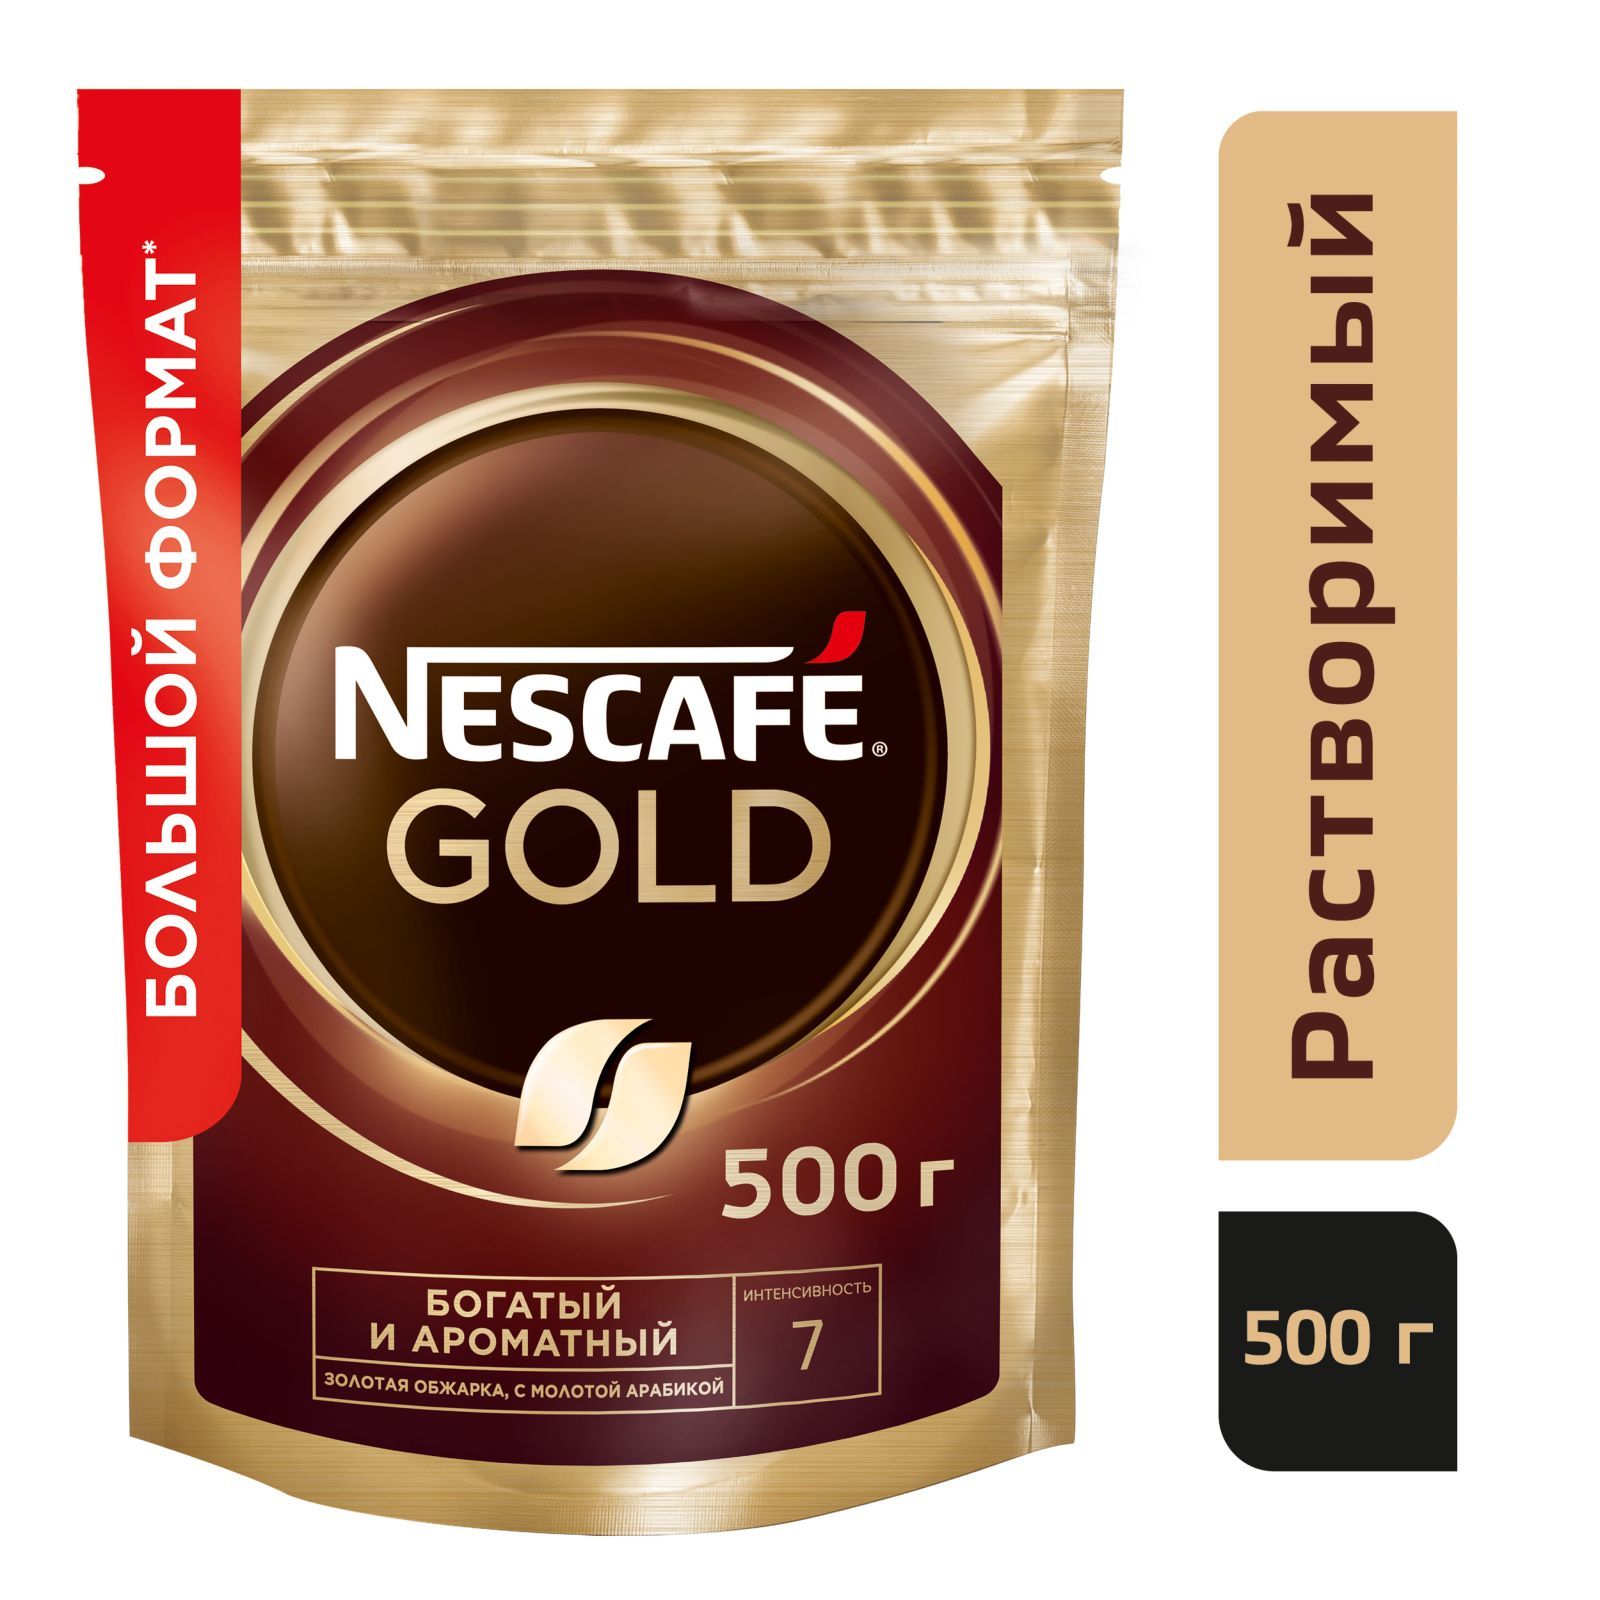 Nescafe gold пакет. Нескафе Голд 900 гр. Nescafe Gold 500 г. Кофе Нескафе Голд 190. Nescafe Gold натуральный сублимированный, 500г.